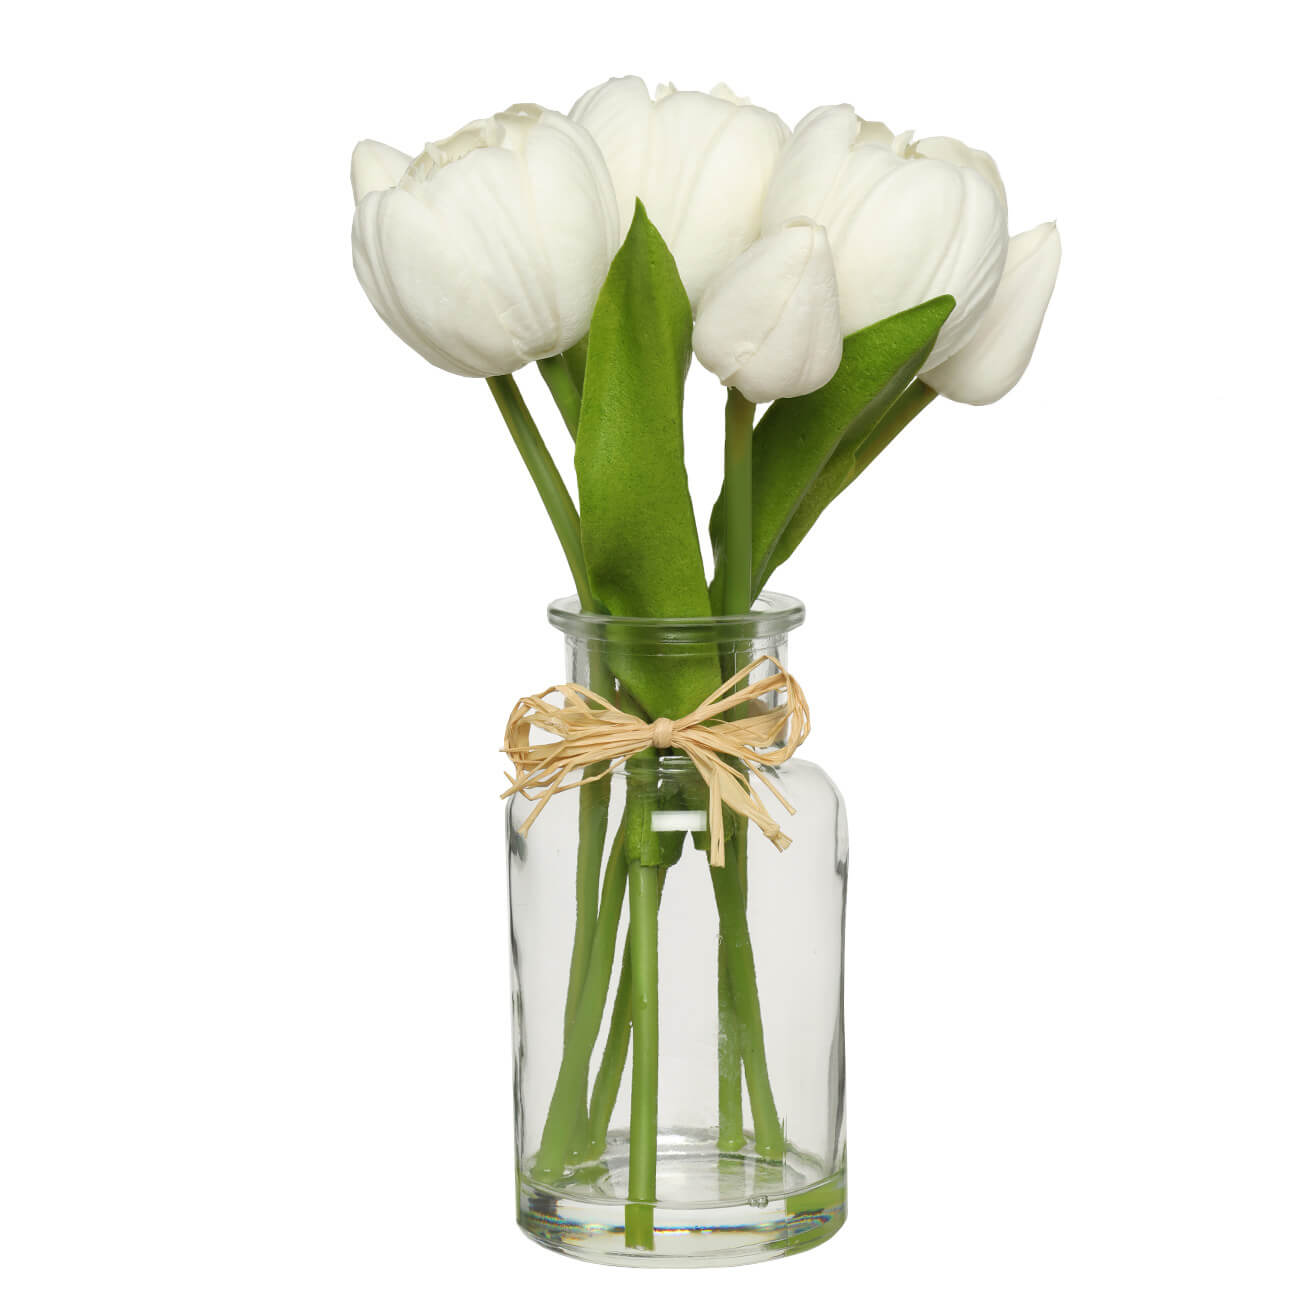 Растение искусственное, 21 см, в вазе, полиуретан/стекло, Белые тюльпаны, Flower garden